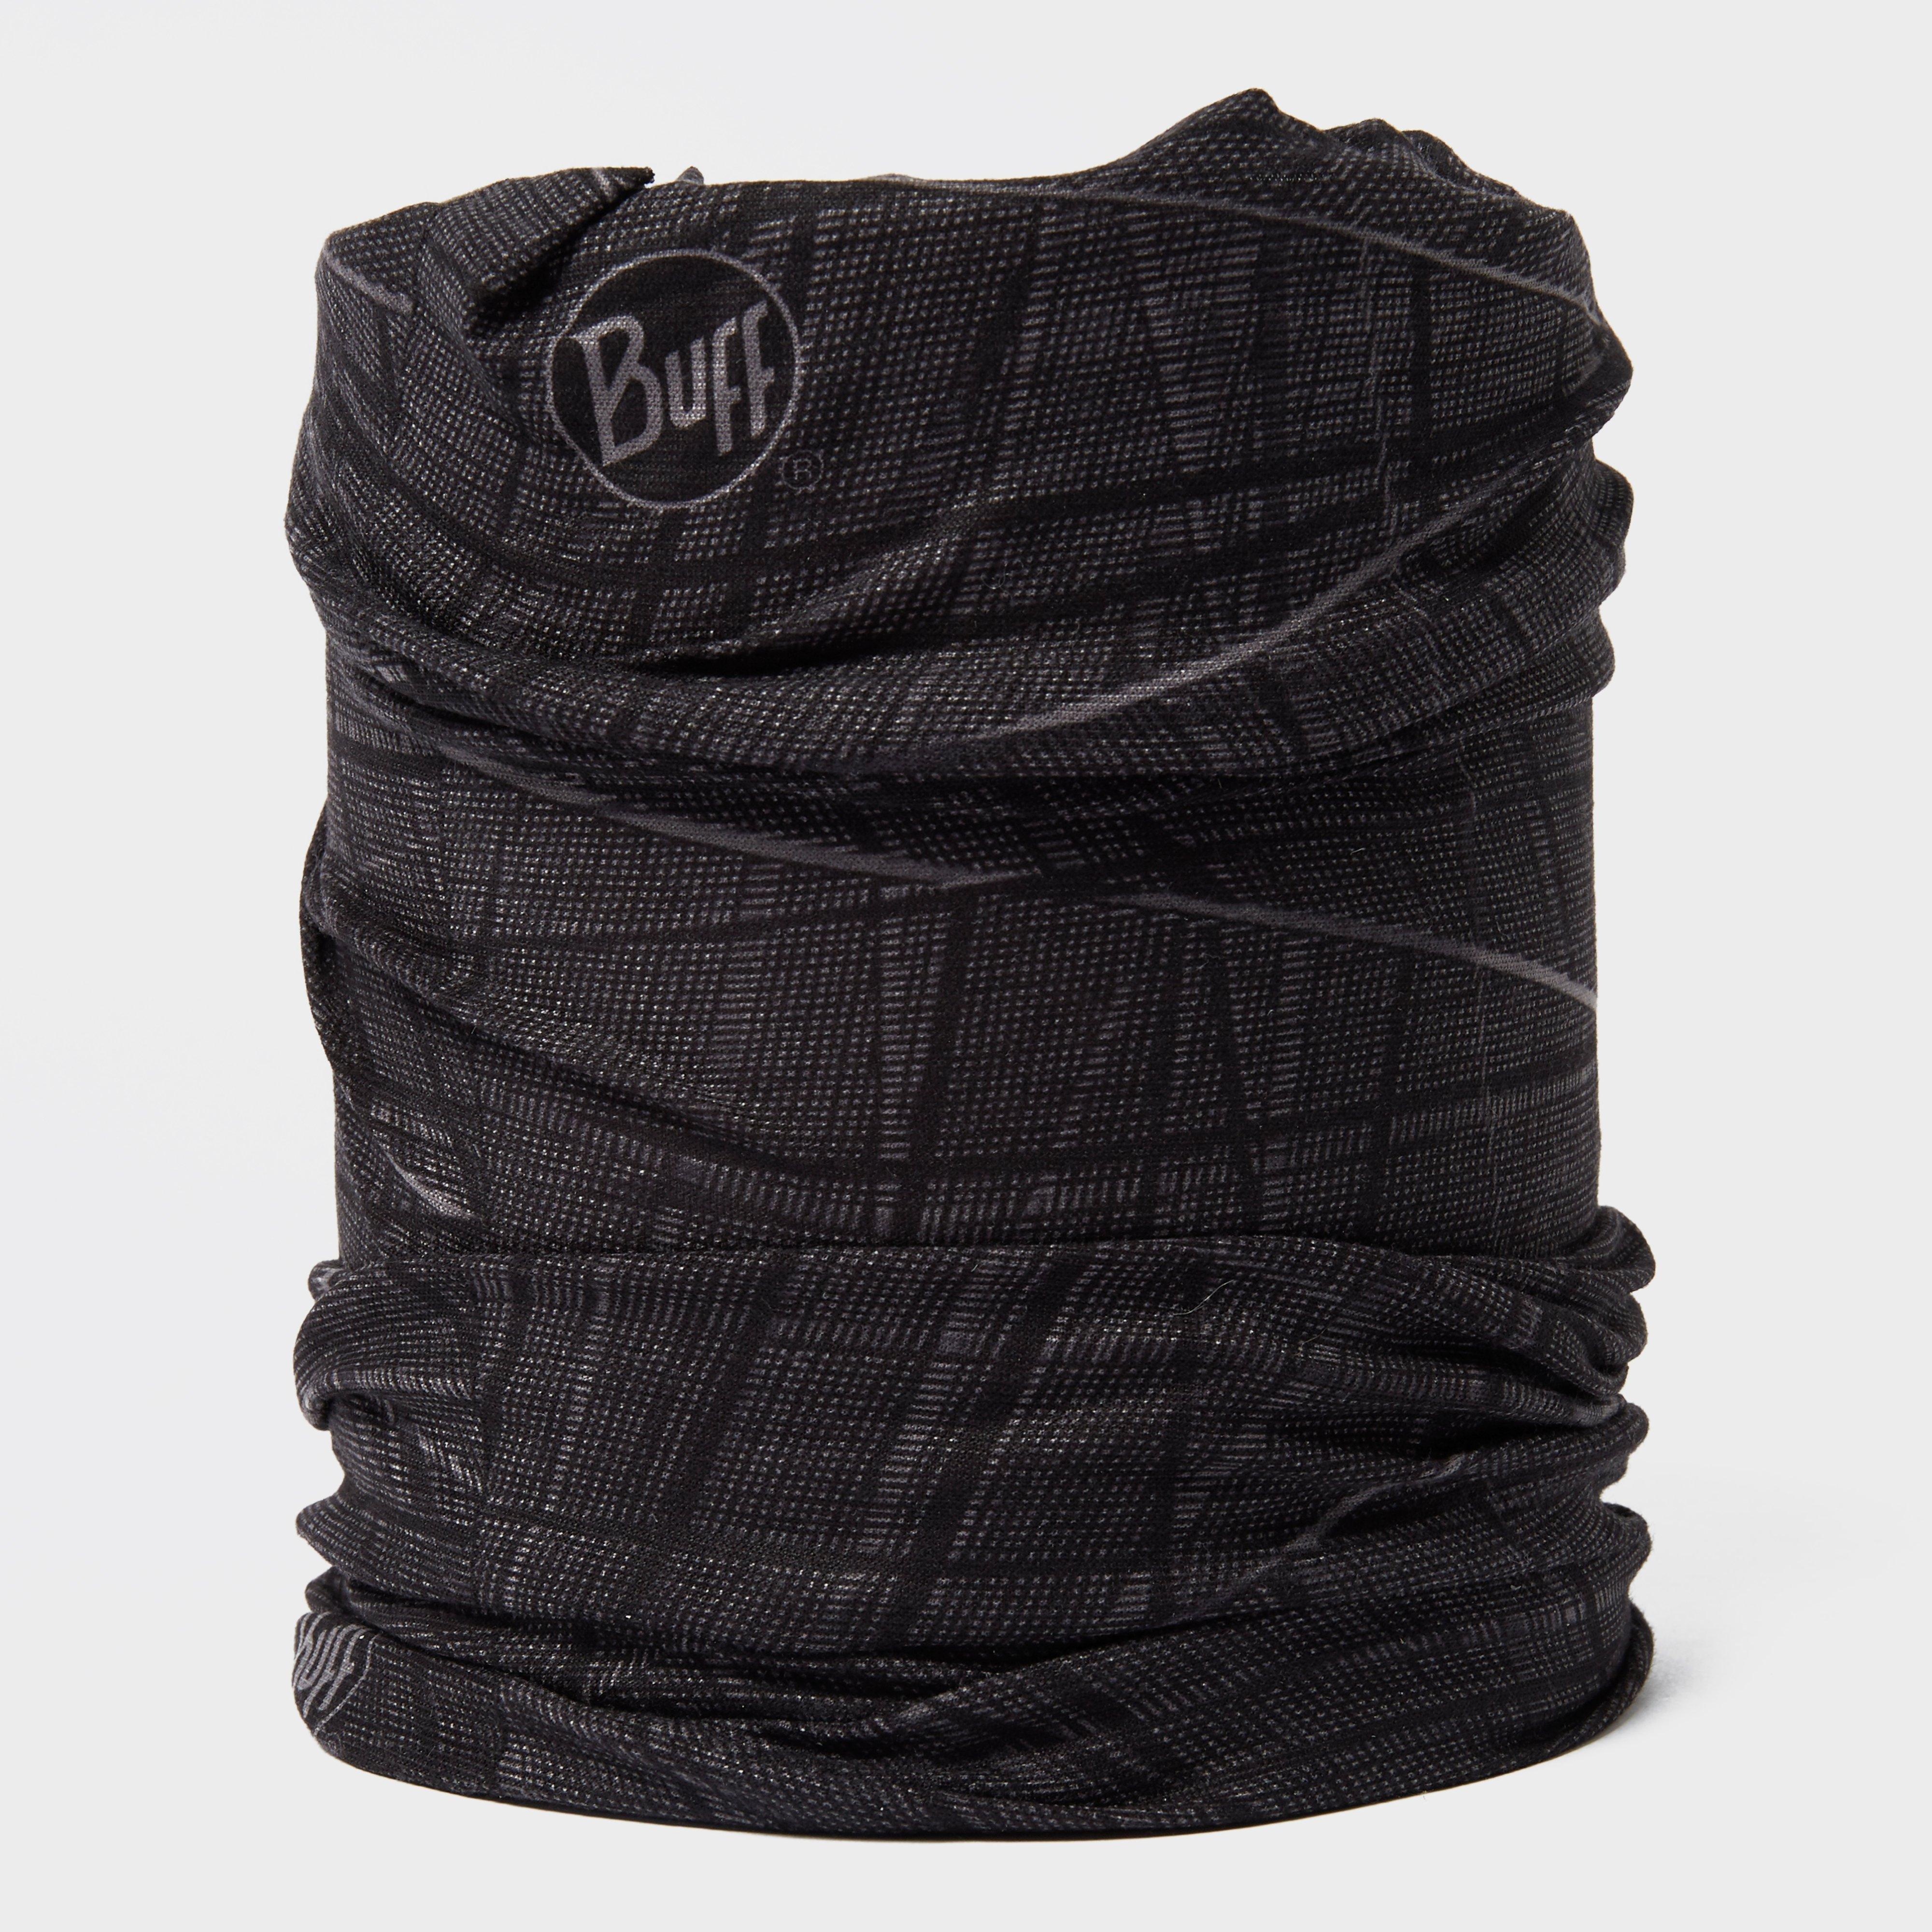 Buff Original Neckwear - Black/original  Black/original